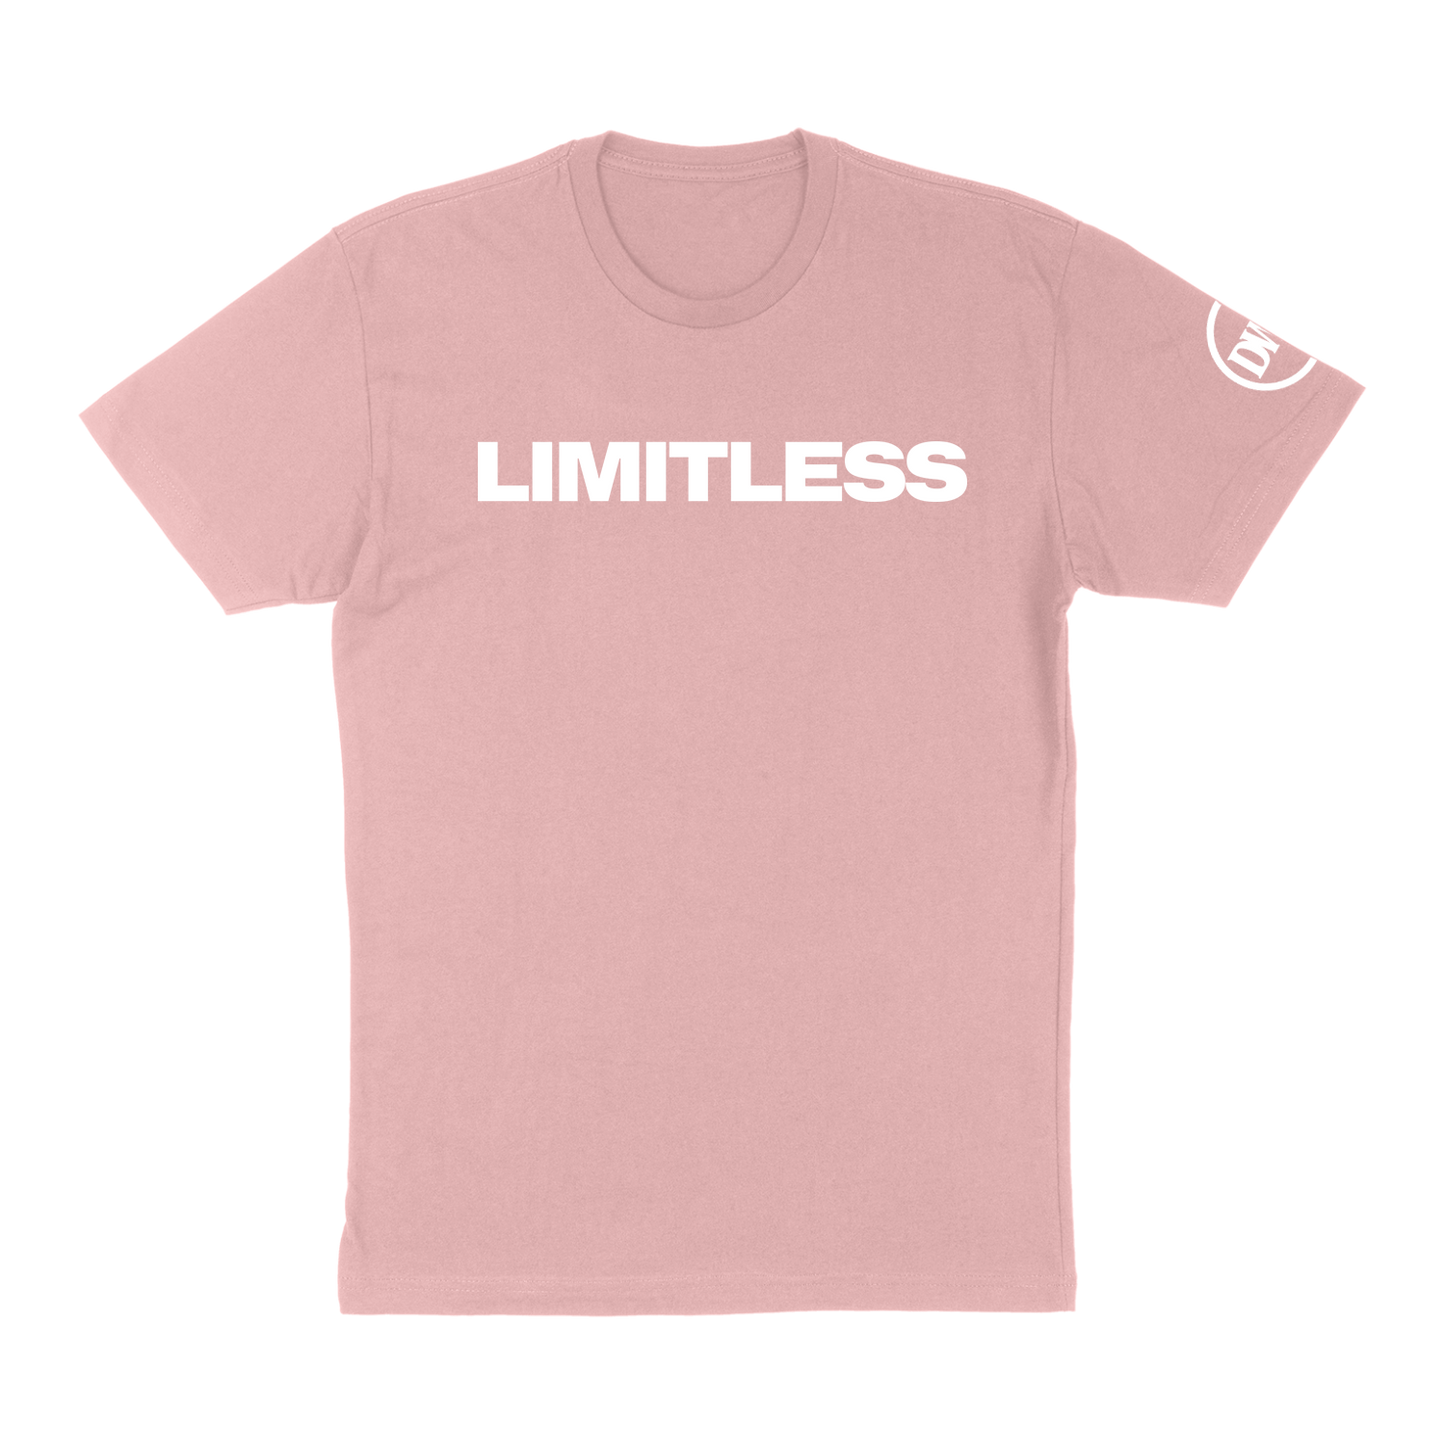 "LIMITLESS" Unisex T-Shirt